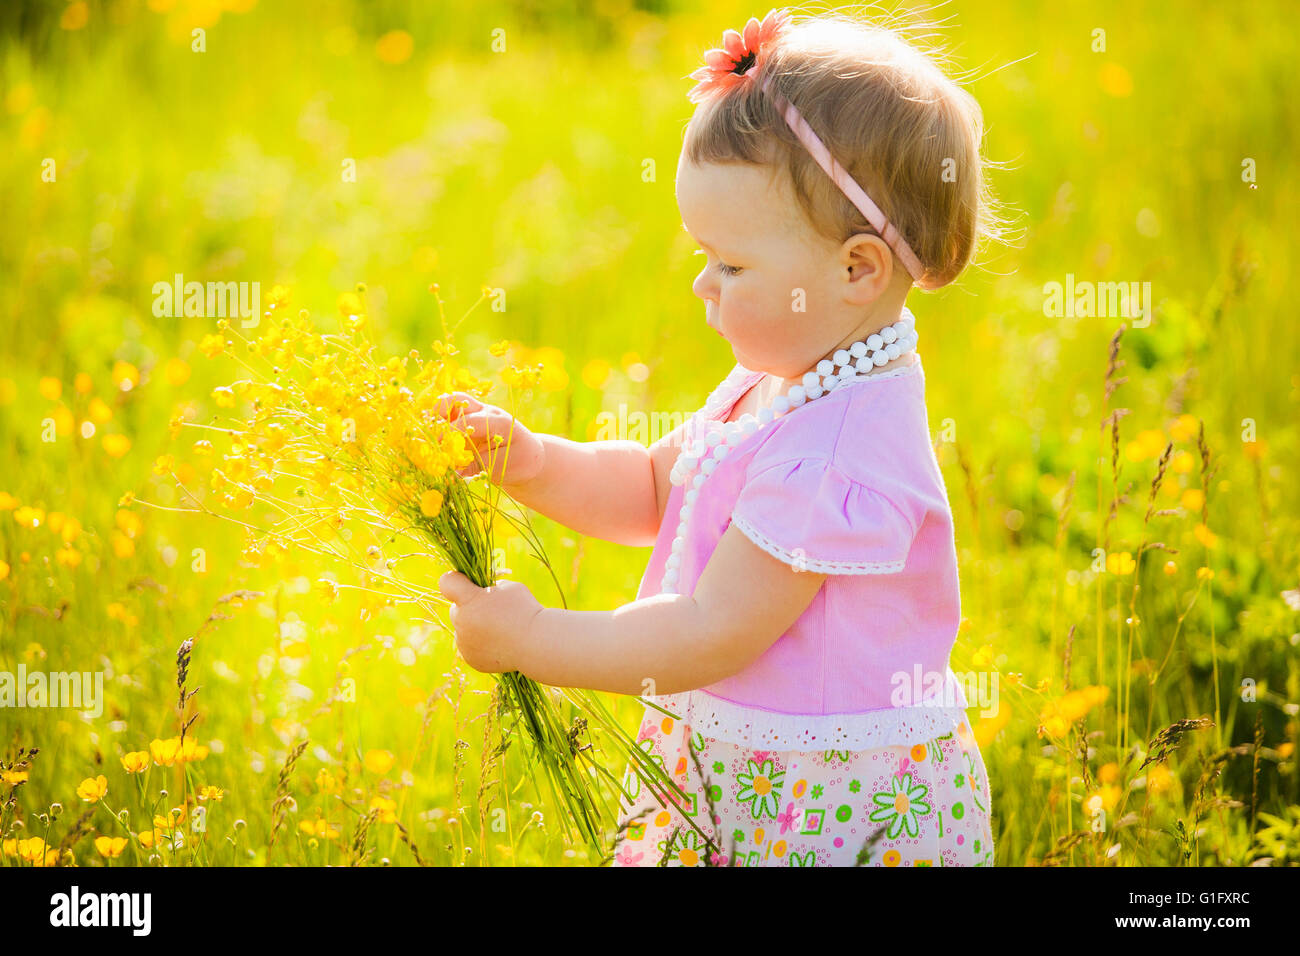 Piccolo, grazioso bambino che gioca da solo in primavera o in estate prato assolato pieno di fiori gialli. Allergy free baby per godersi la natura. Foto Stock